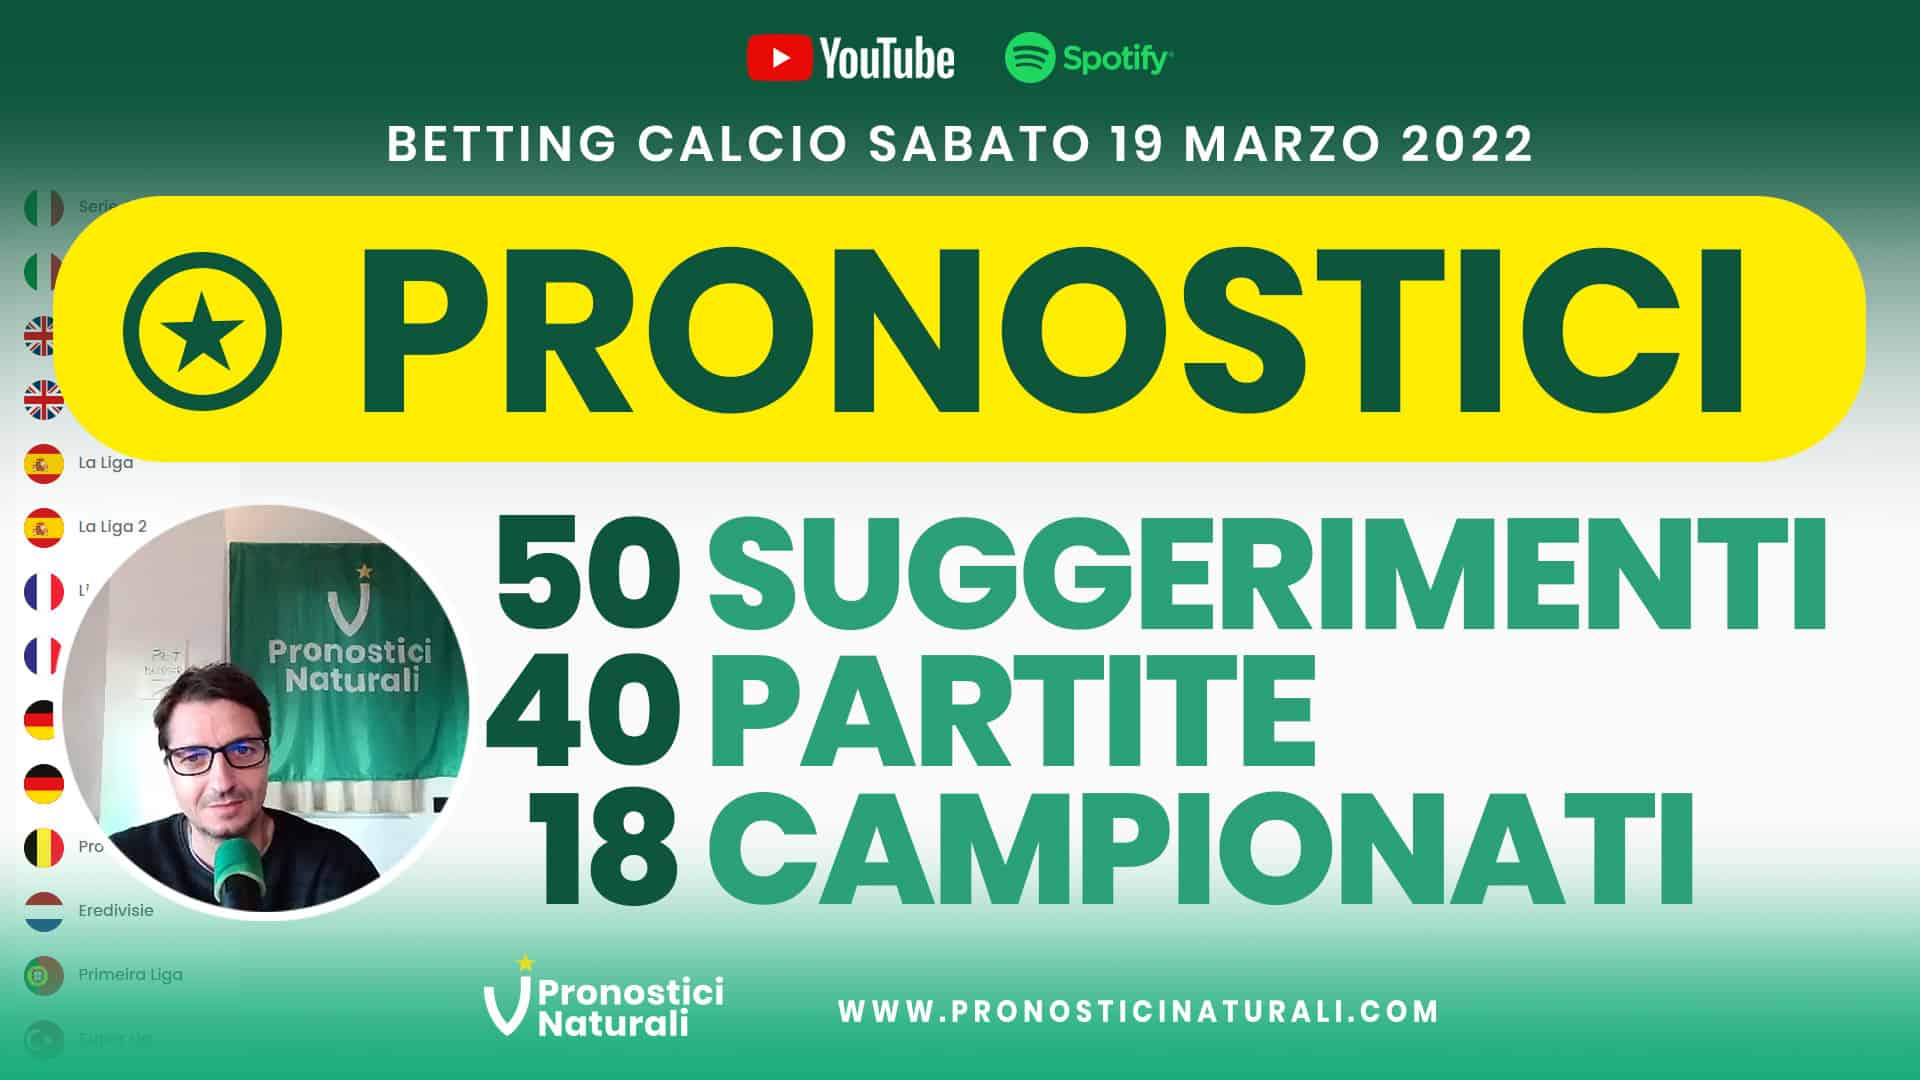 Pronostici Naturali Video Analisi Scommesse Betting Calcio Analisi Pre Partite Sabato 19 Marzo 2022